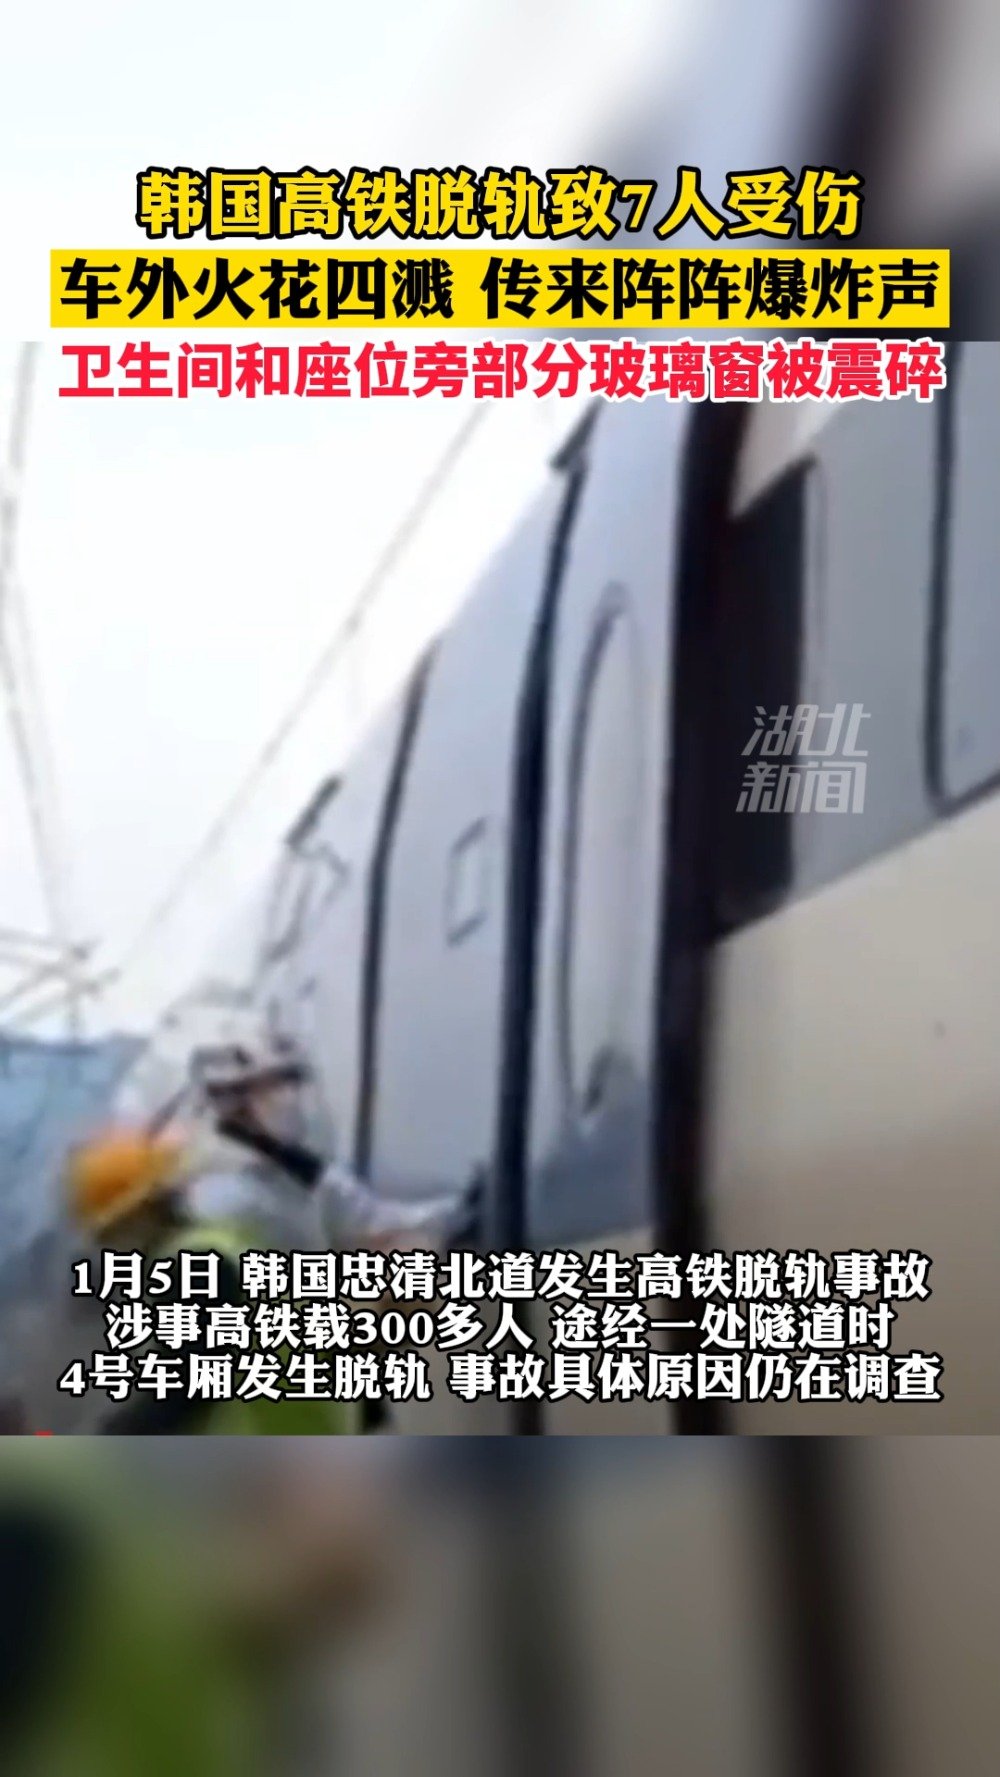 韩国一高铁脱轨致7人受伤